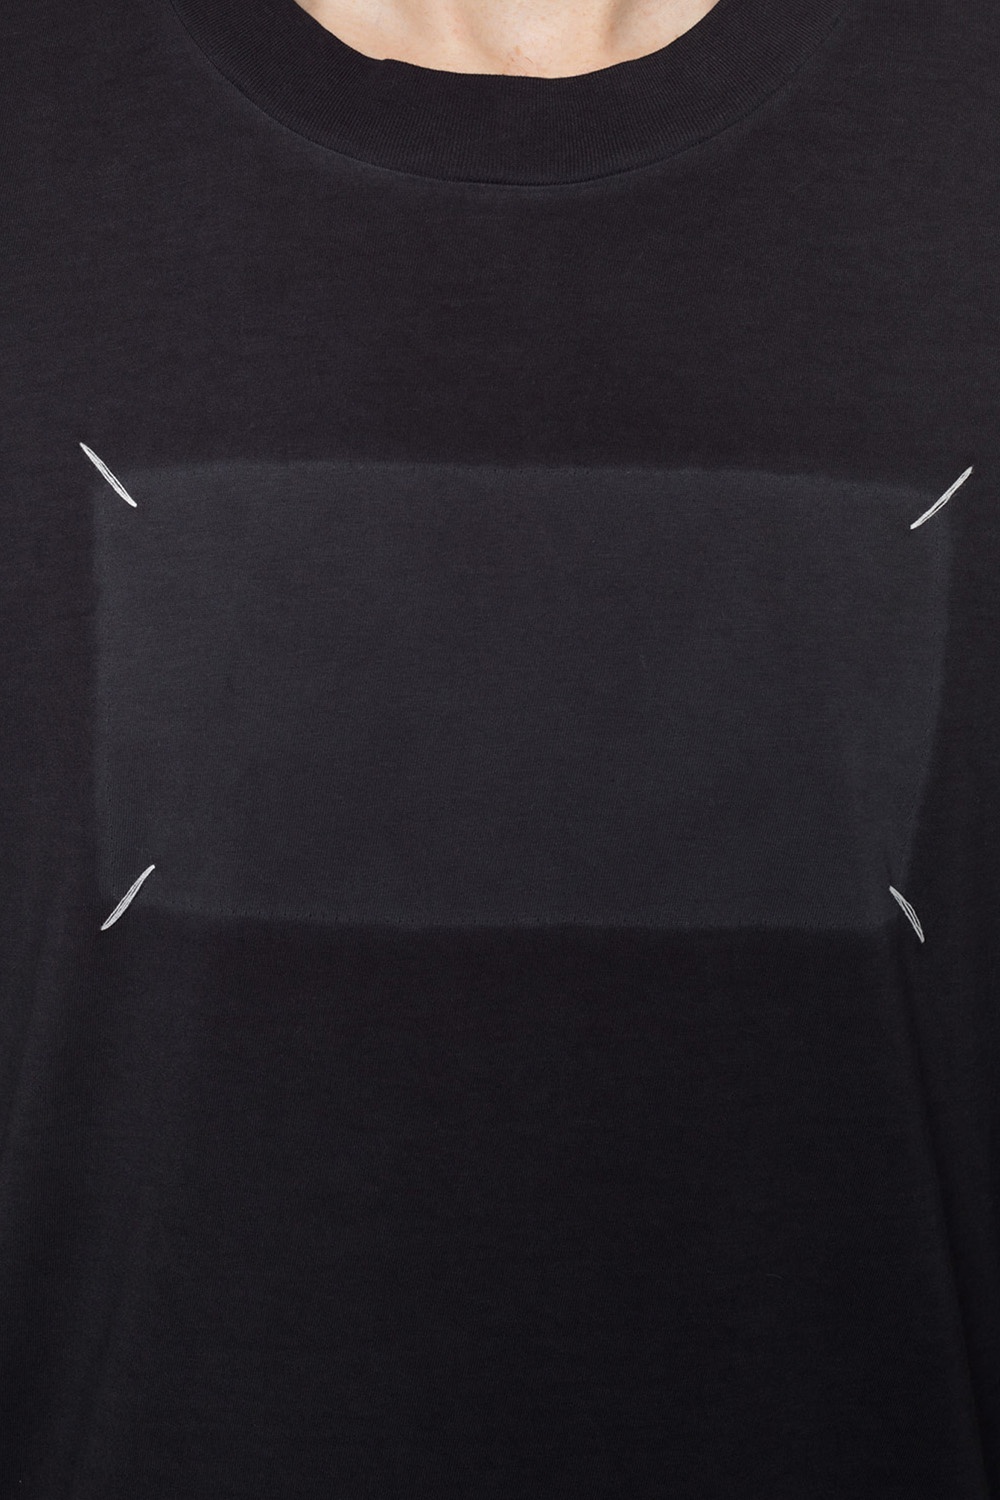 Maison Margiela T-shirt with stitching details | Men's Clothing ...